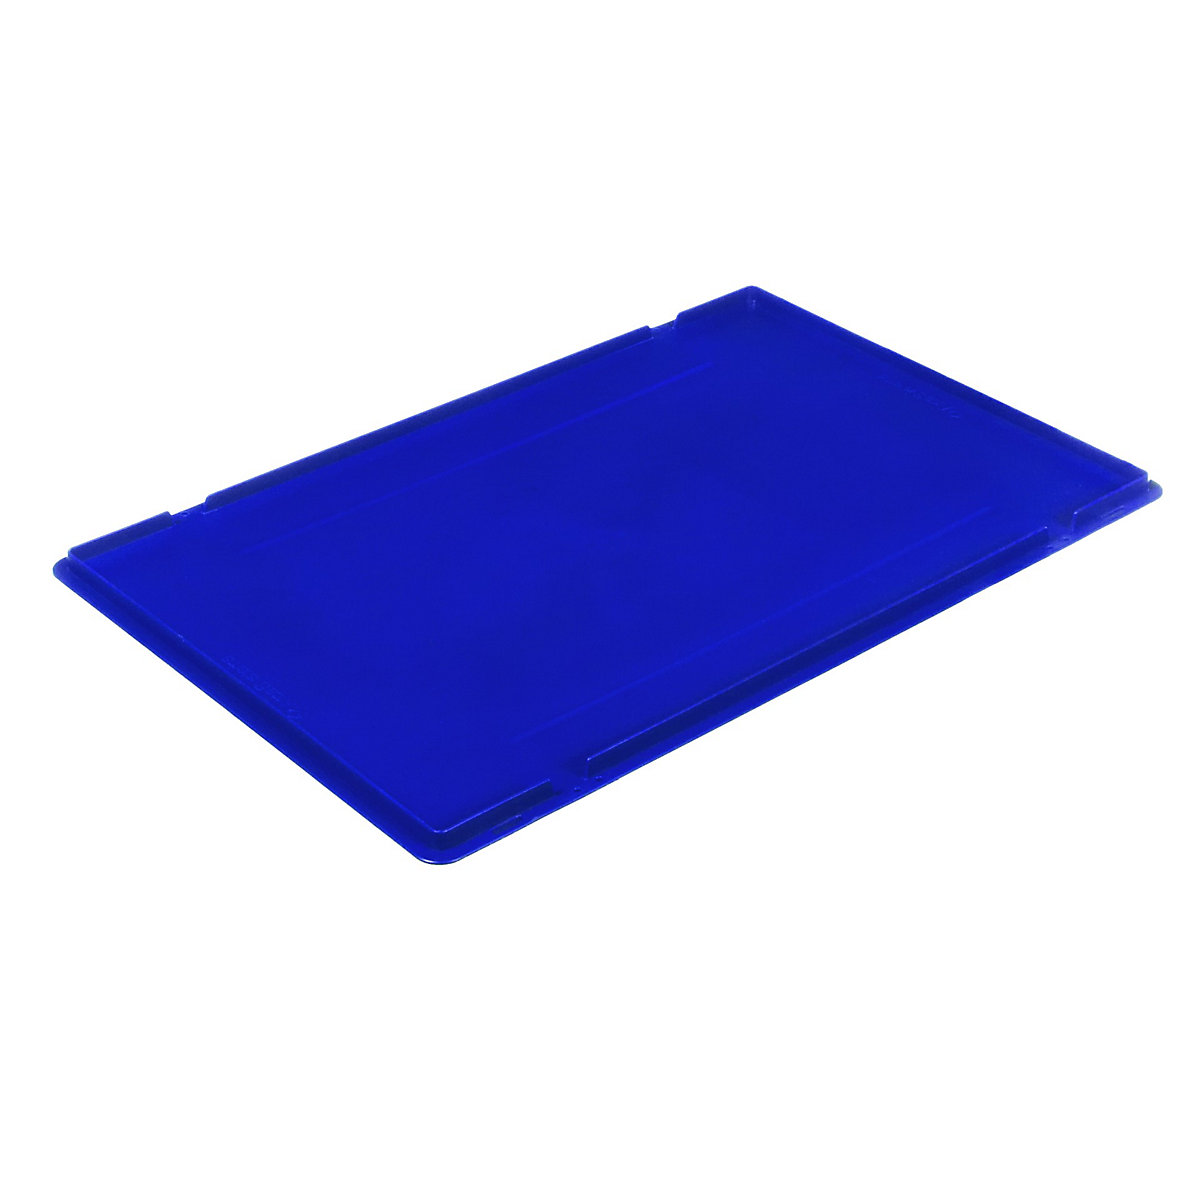 Auflagedeckel für RL-KLT-Behälter, aus PP, blau, LxBxH 594 x 396 x 27 mm-1